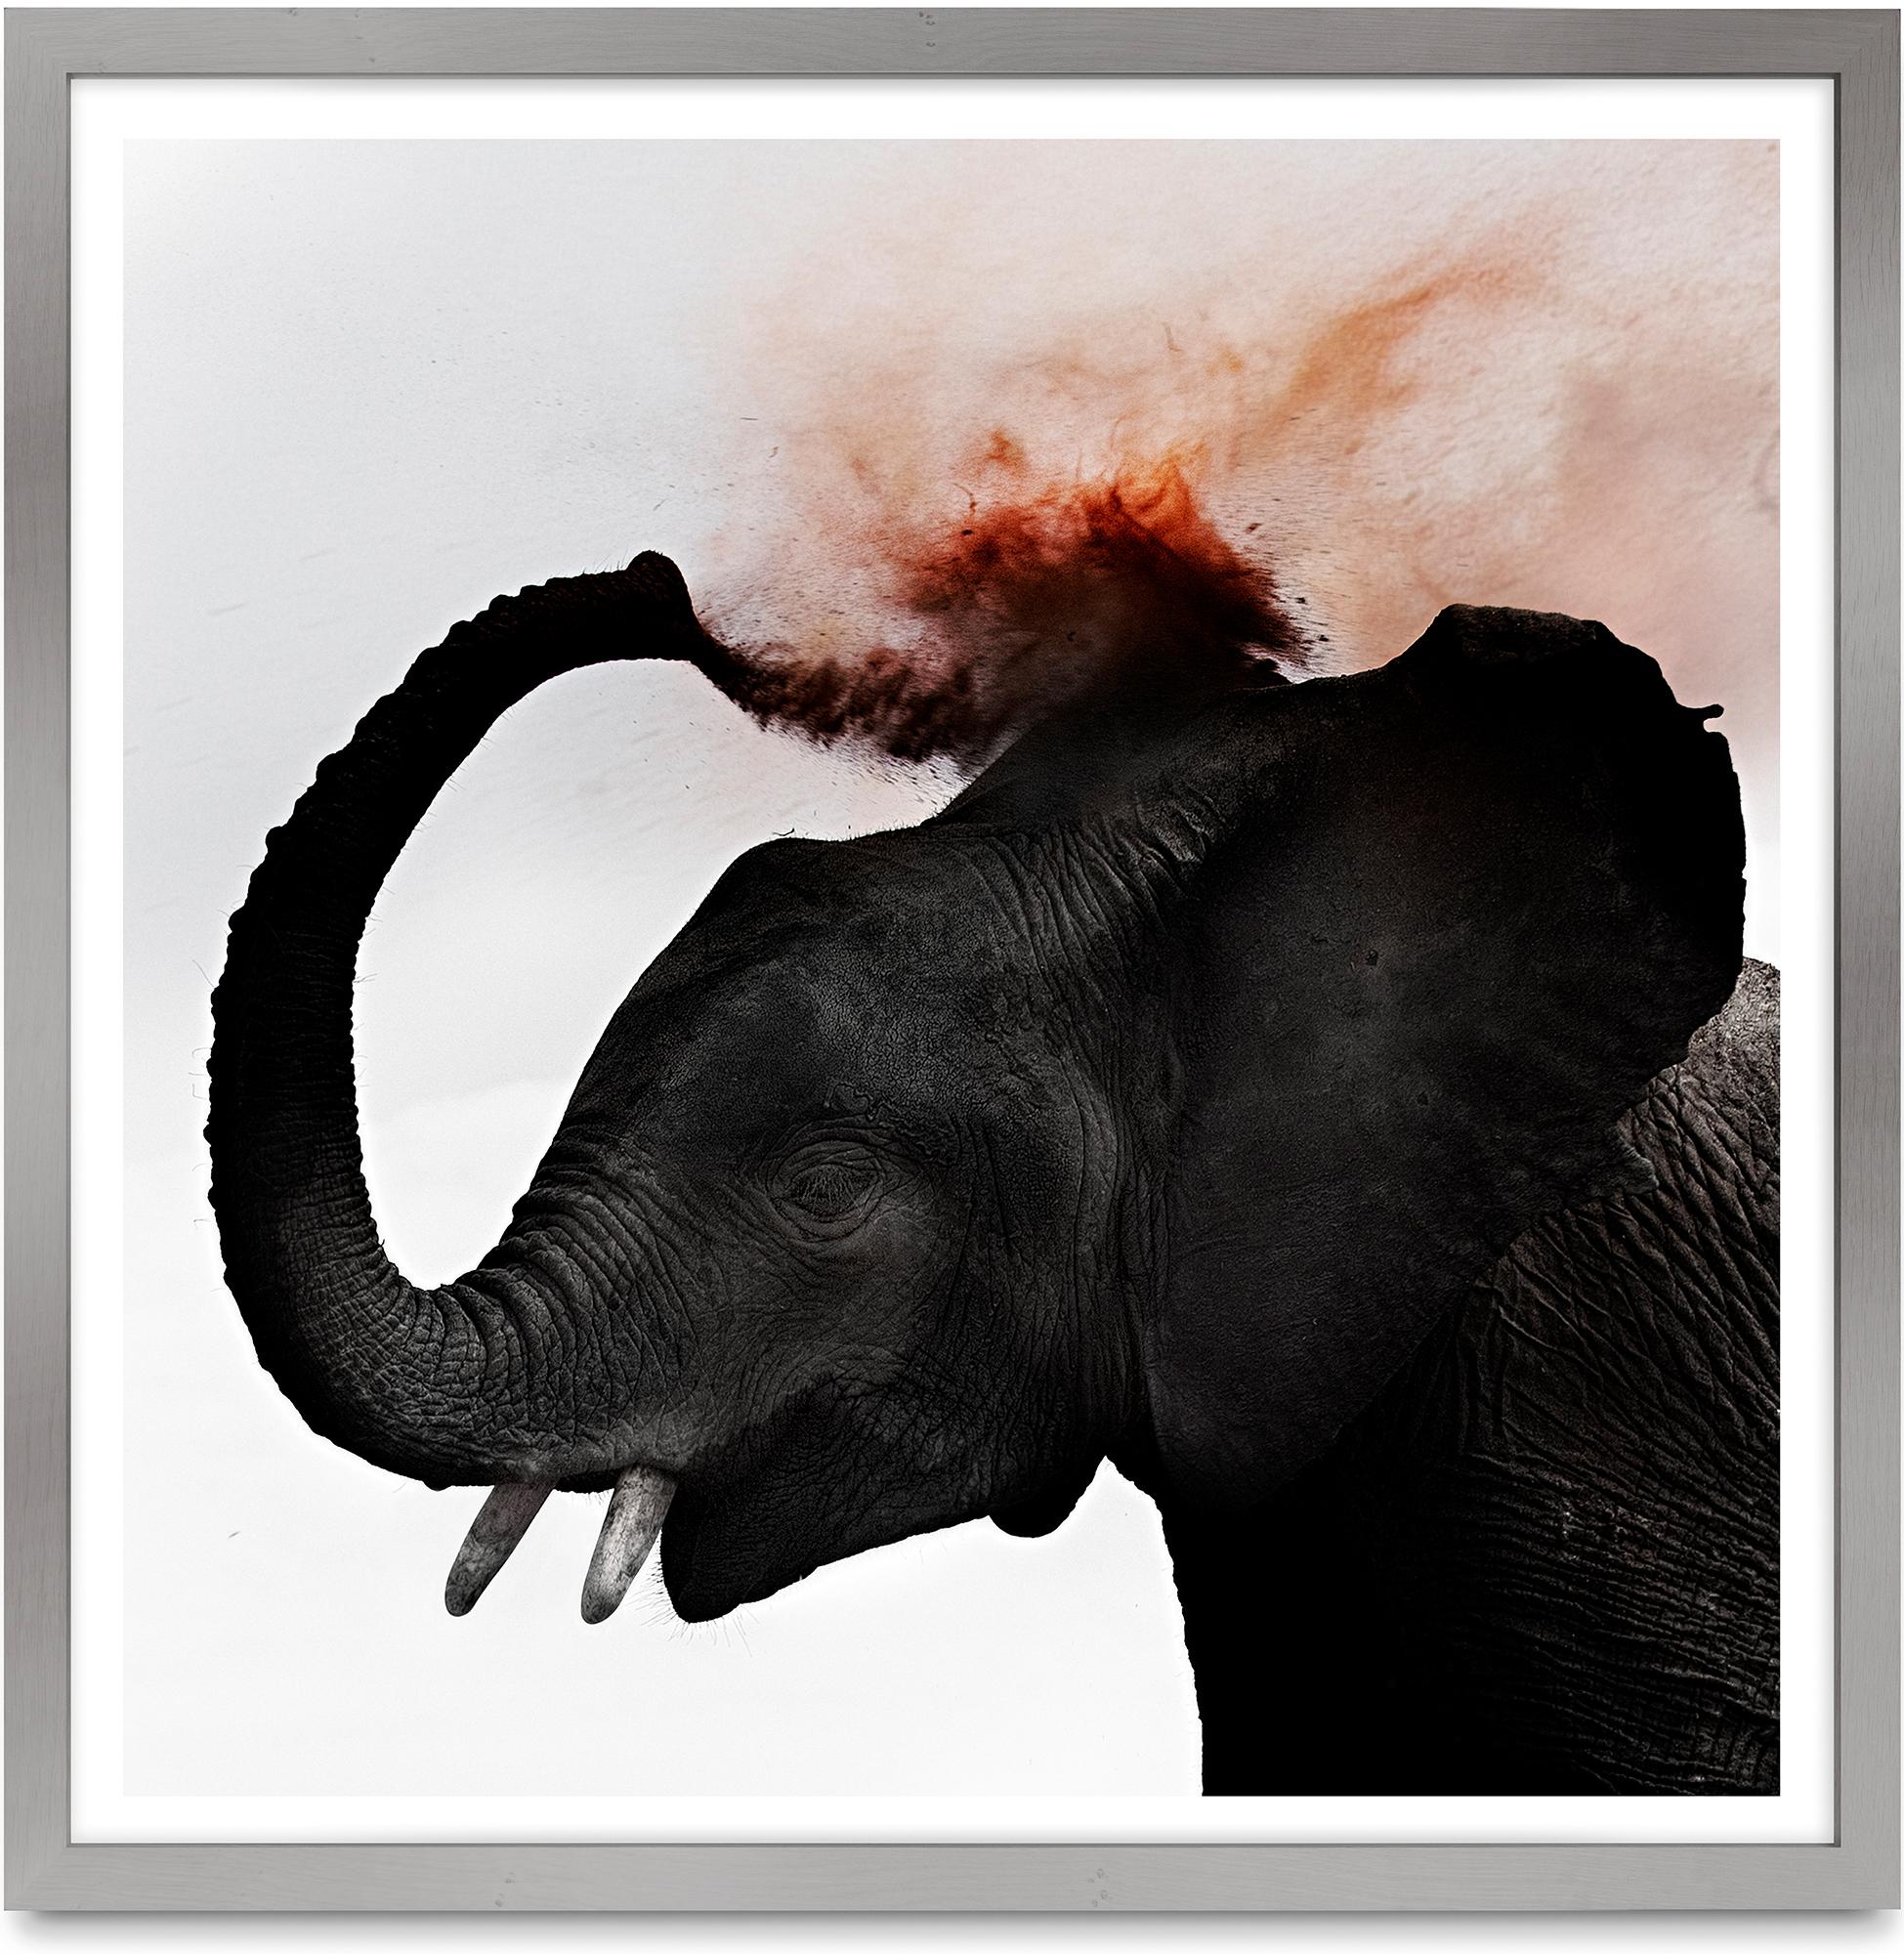 Dust III, Kenia, Elefant, Tier, Tierwelt, Farbfotografie – Photograph von Joachim Schmeisser